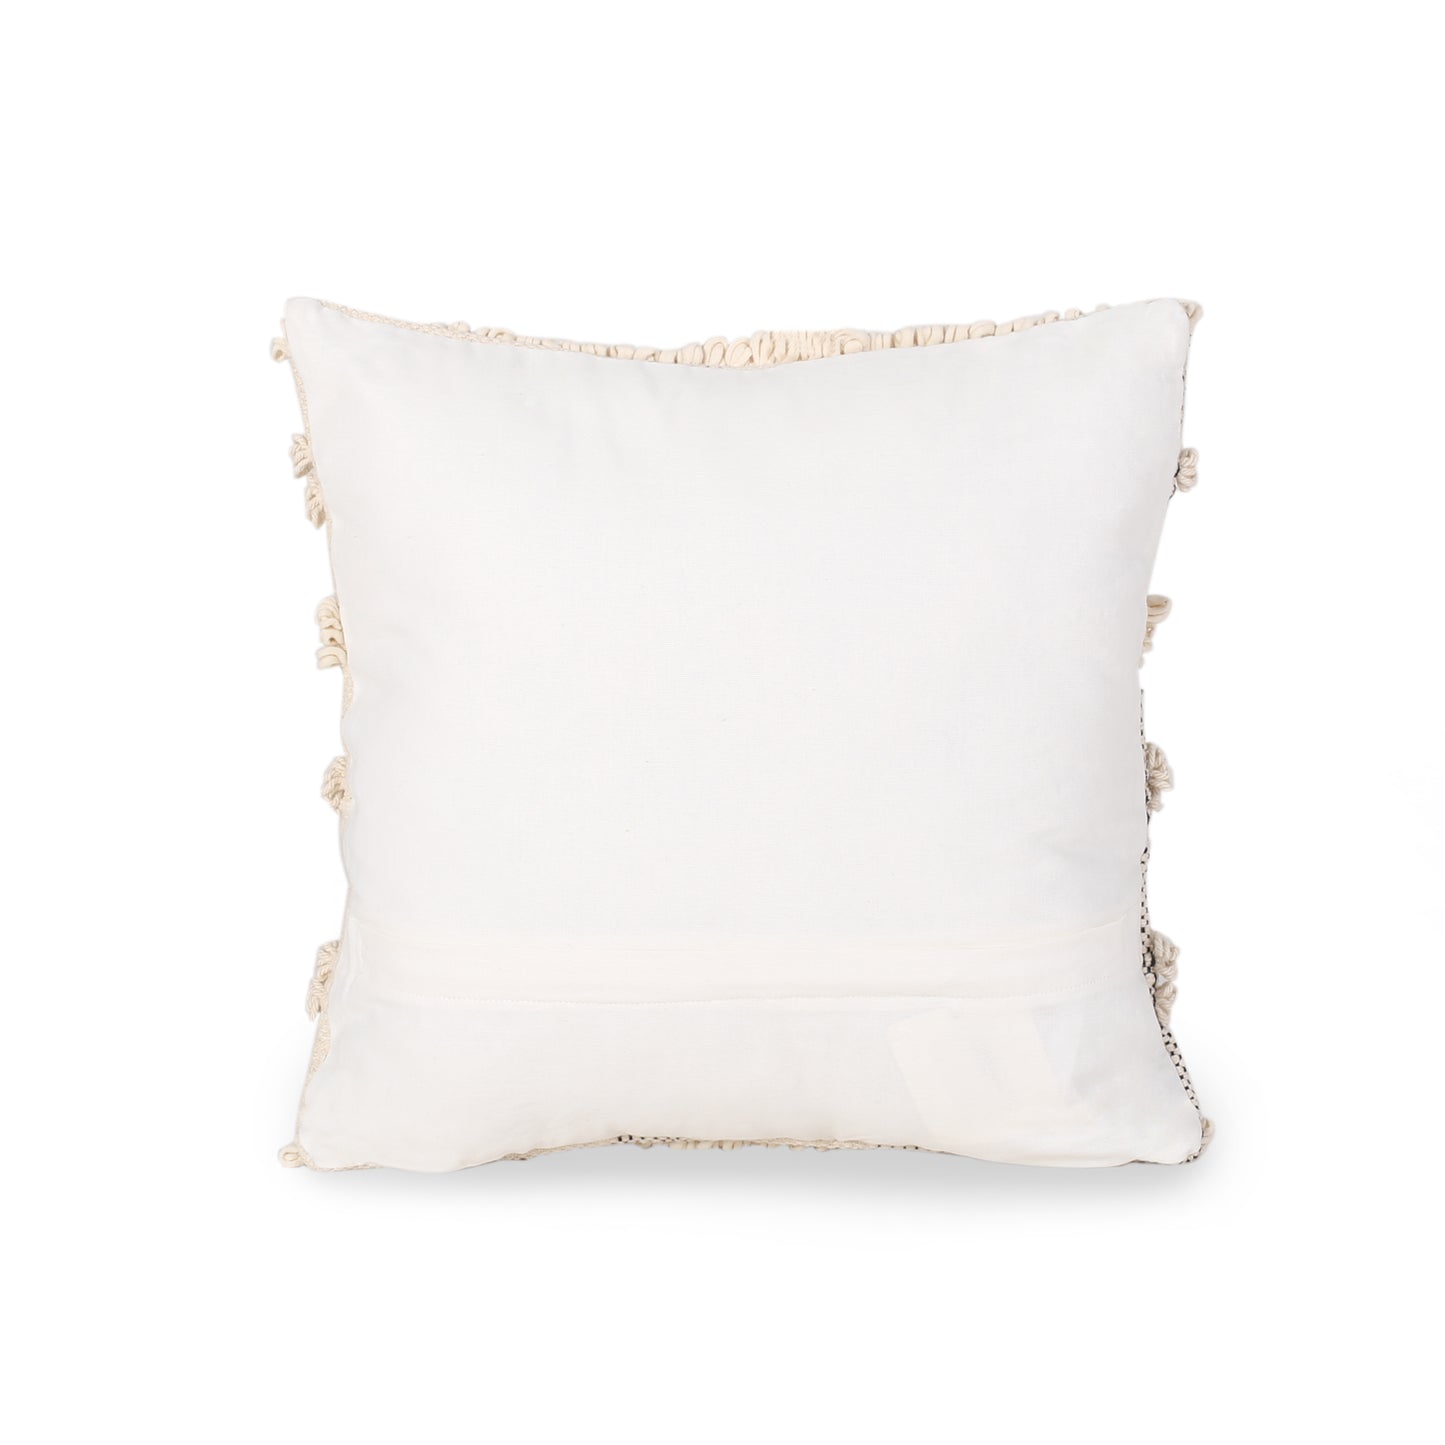 Stephanie Boho Cotton Pillow Cover